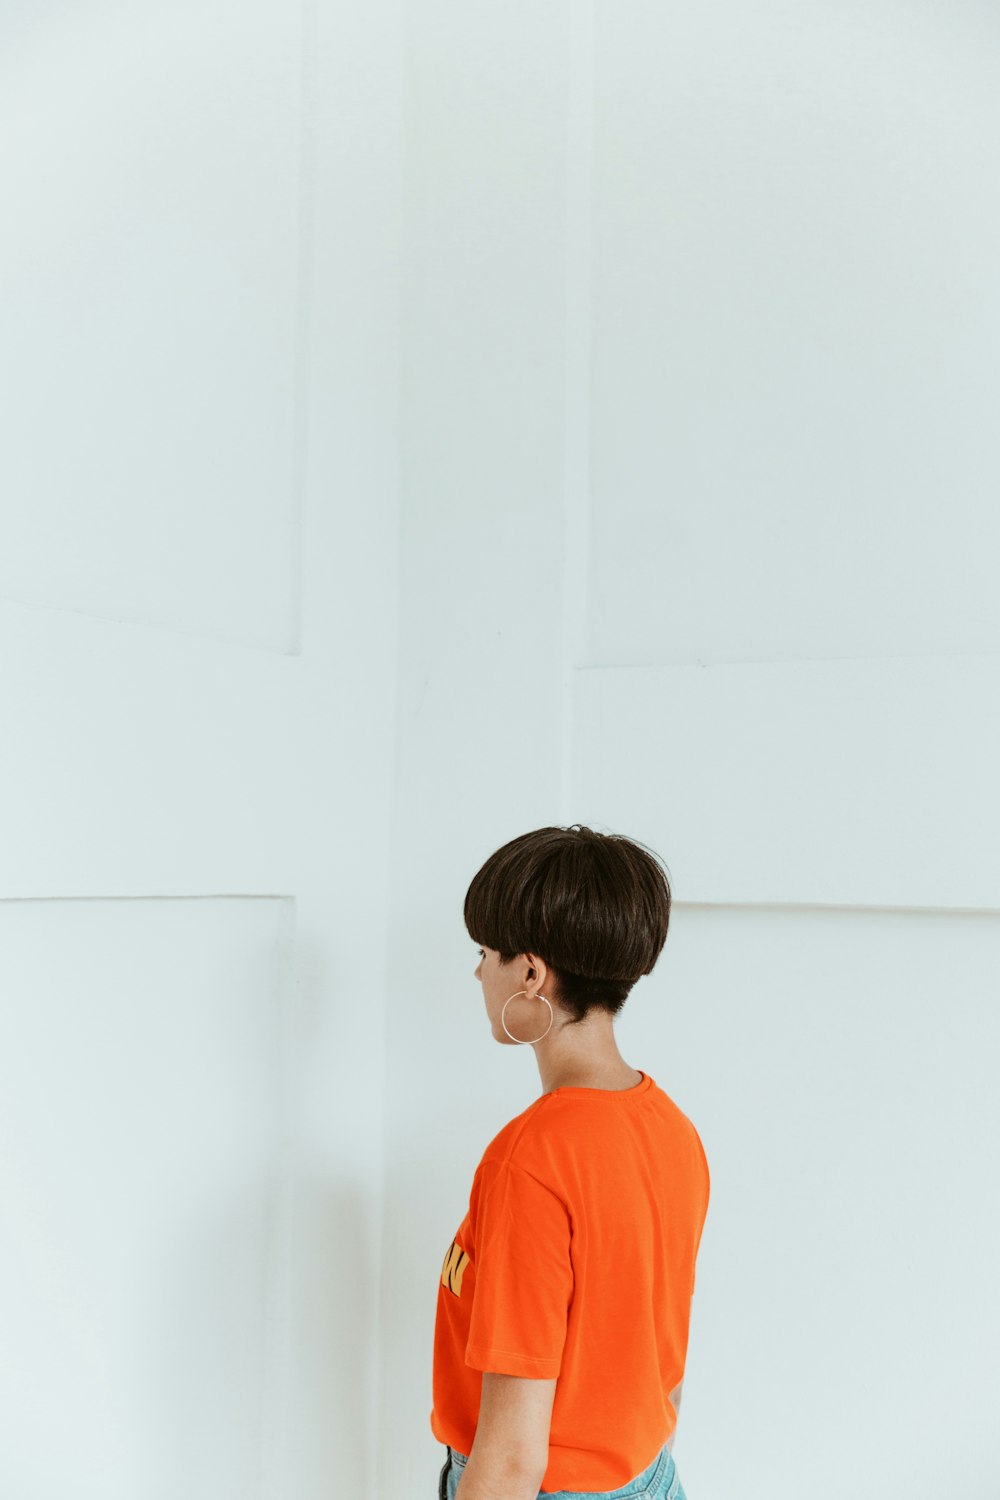 Frau trägt orangefarbenes Hemd mit Blick auf weiße Wand